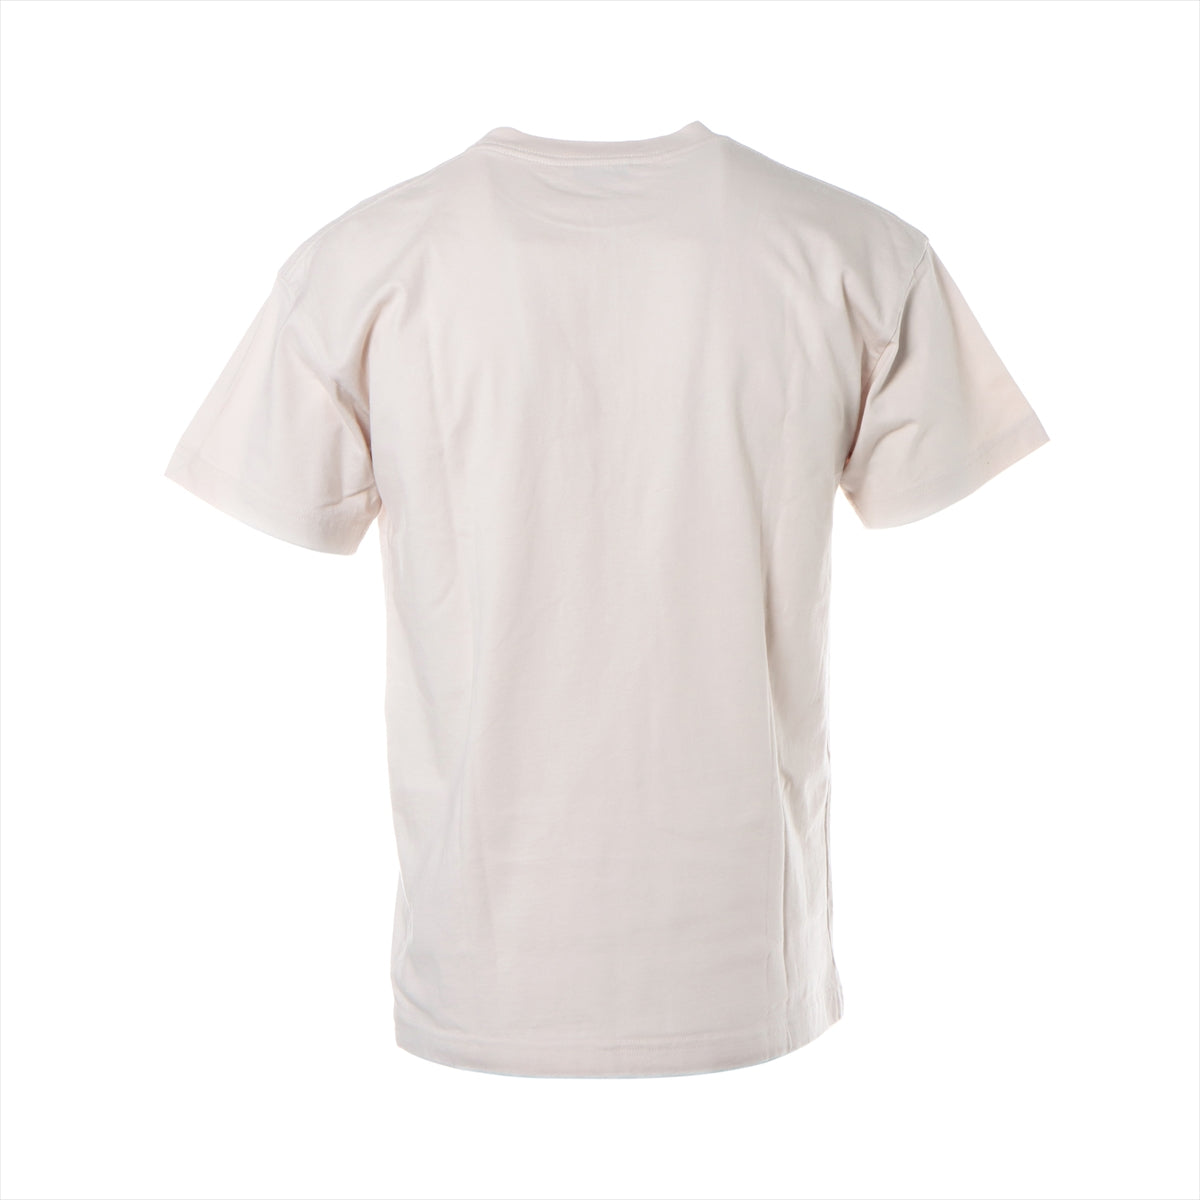 バレンシアガ 20年 コットン Tシャツ XS ユニセックス ベージュ  612965